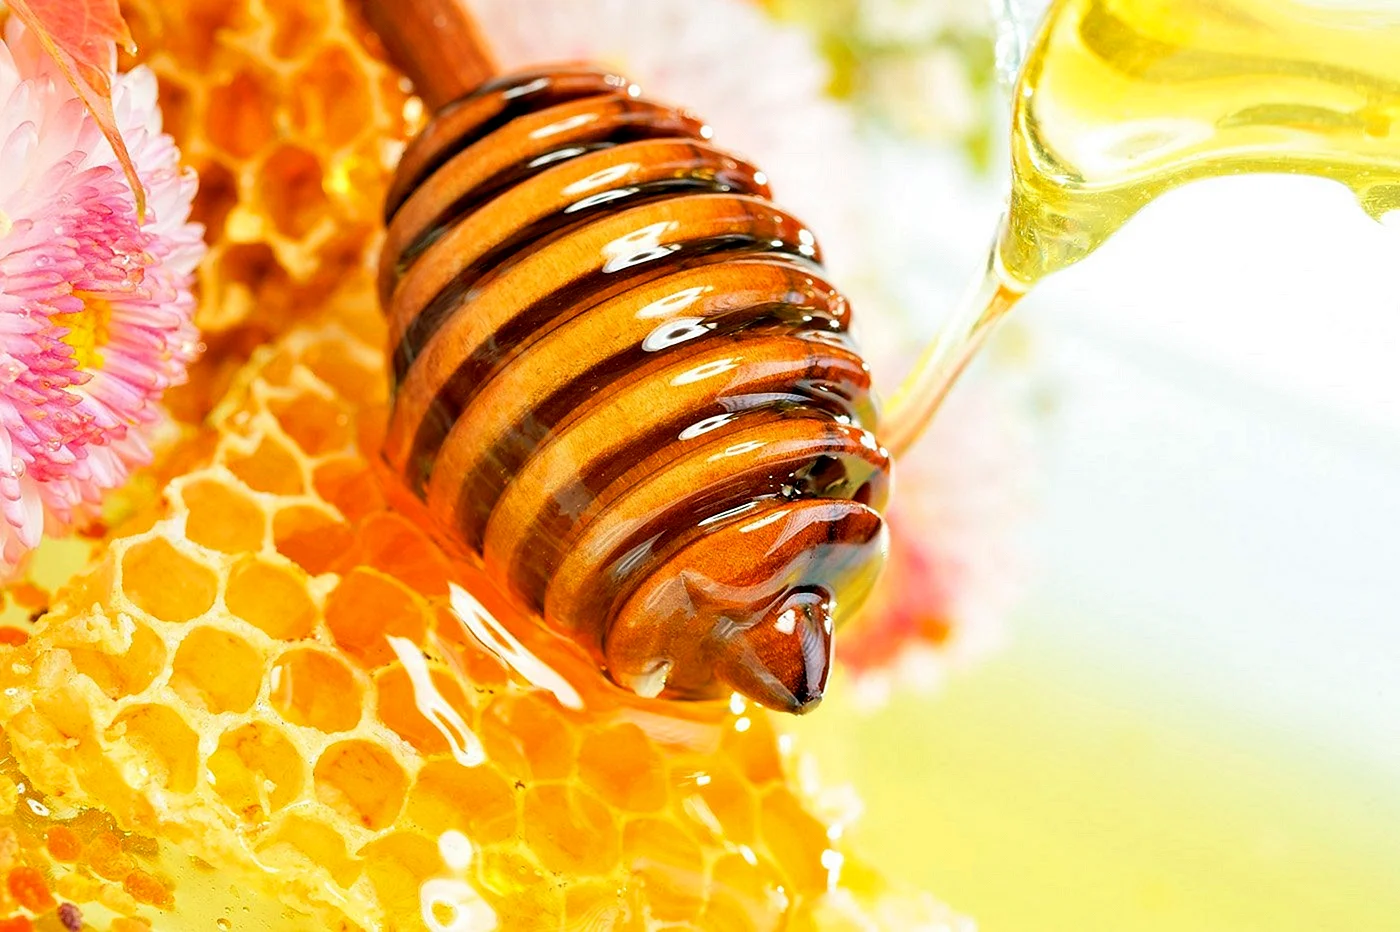 Пчелы и мед